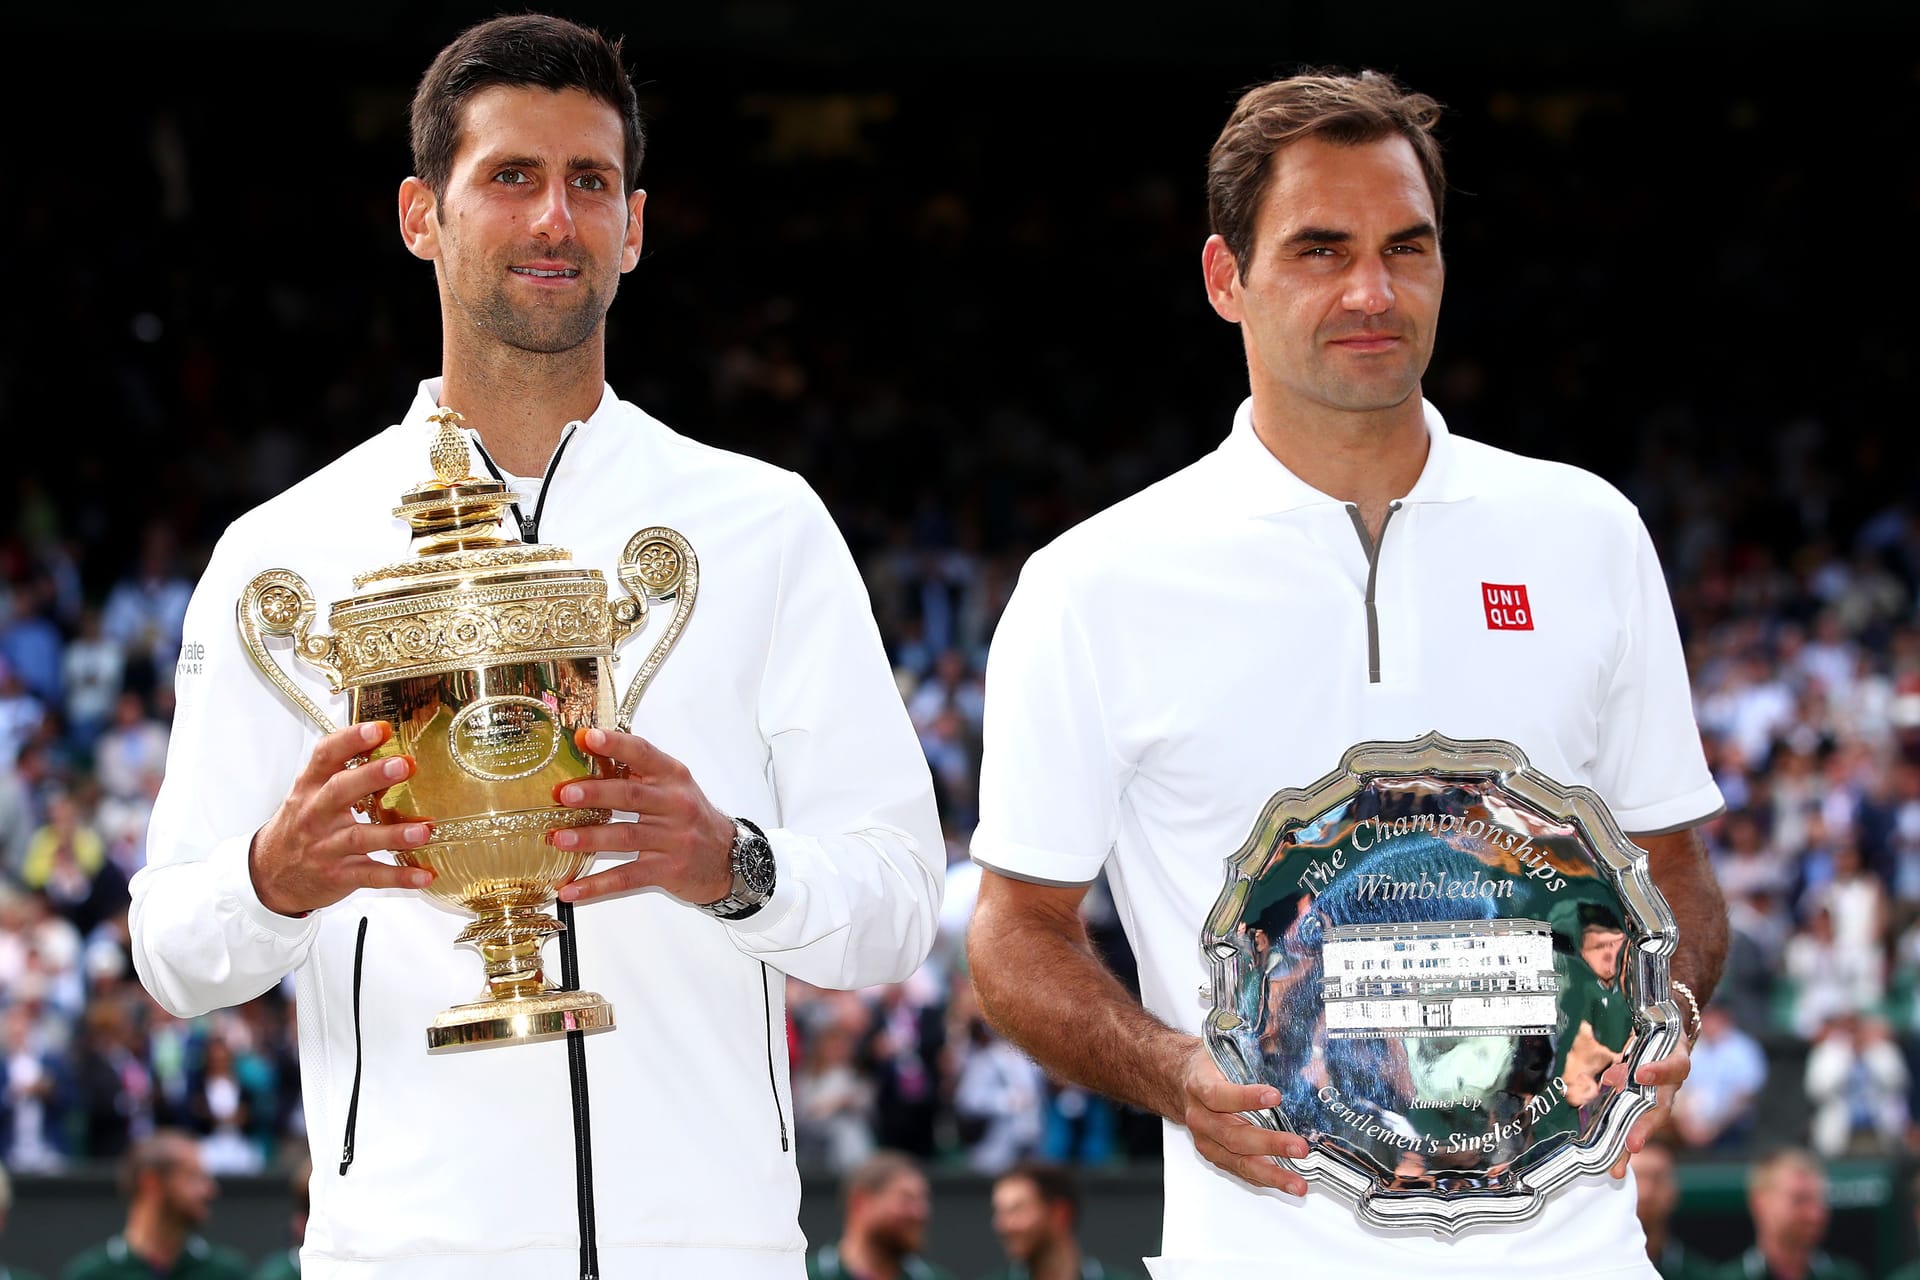 Wimbledon 2019: Fünf Sätze, 4 Stunden und 57 Minuten Spielzeit – und an Ende heißt der Gewinner Novak Djokovic. In seinem zwölften Finale auf dem heiligen Rasen hat Federer mehrere Matchbälle, aber kann sie nicht nutzen.